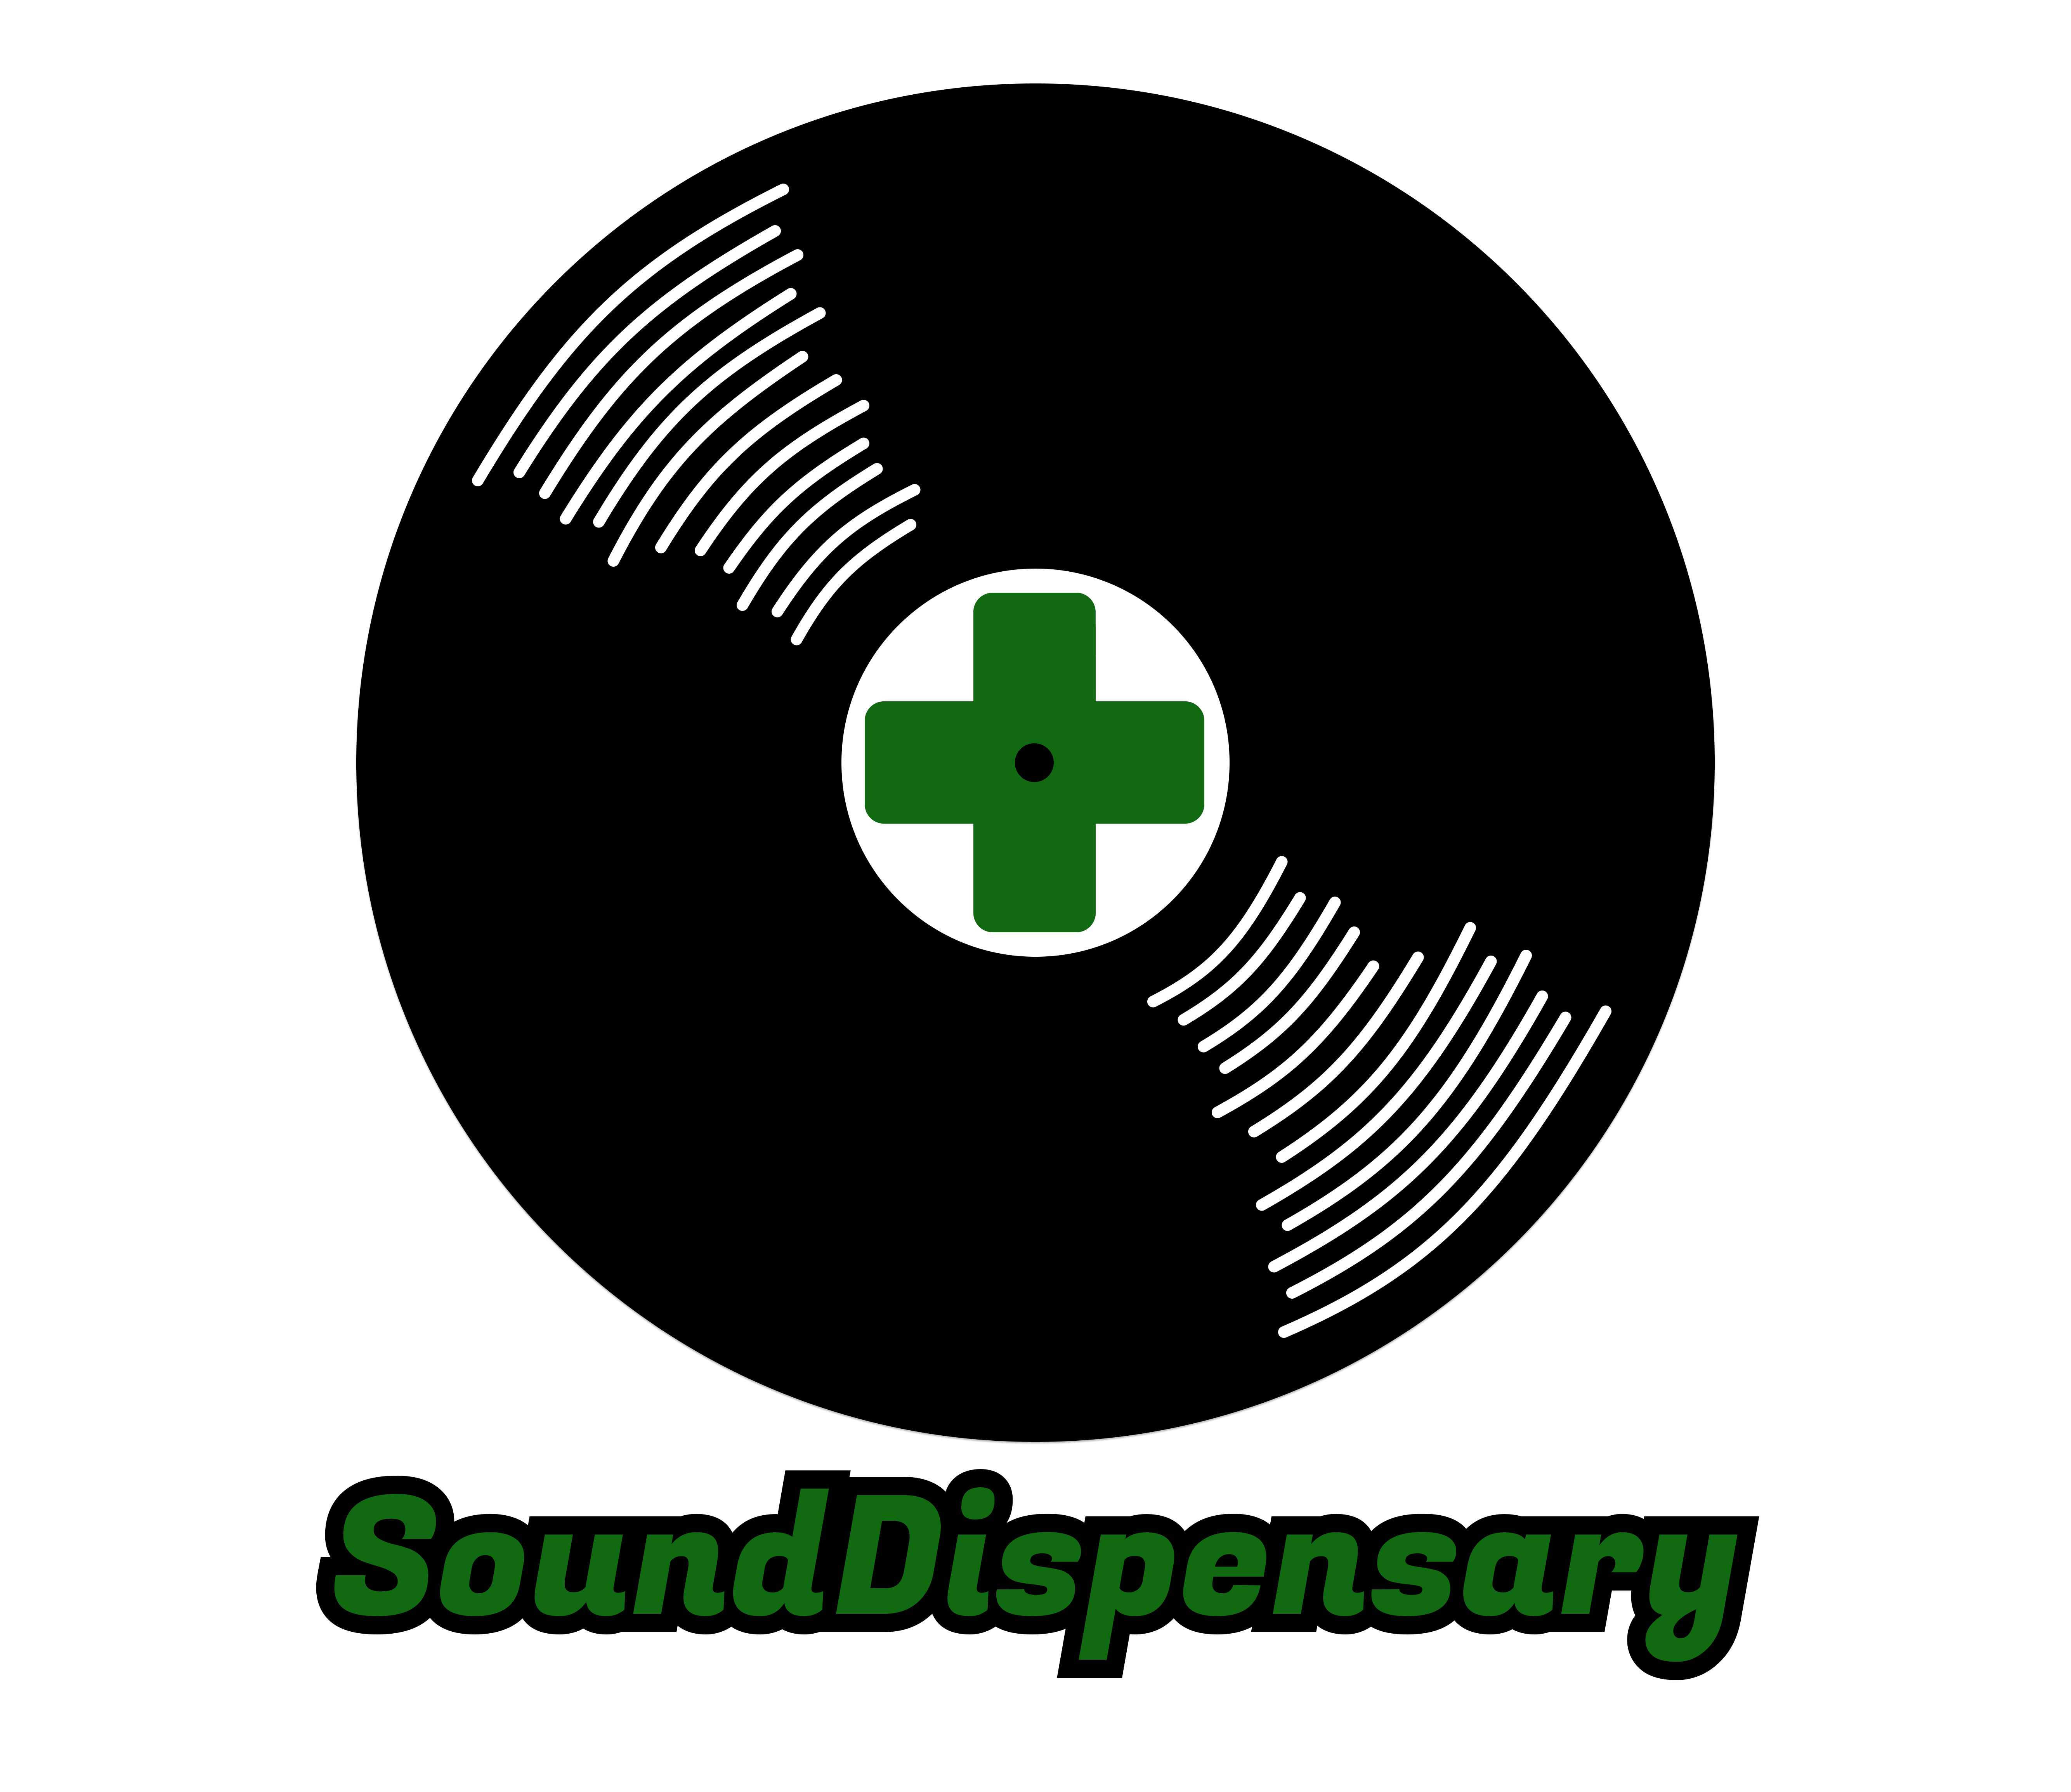 SoundDispensary Show Logo